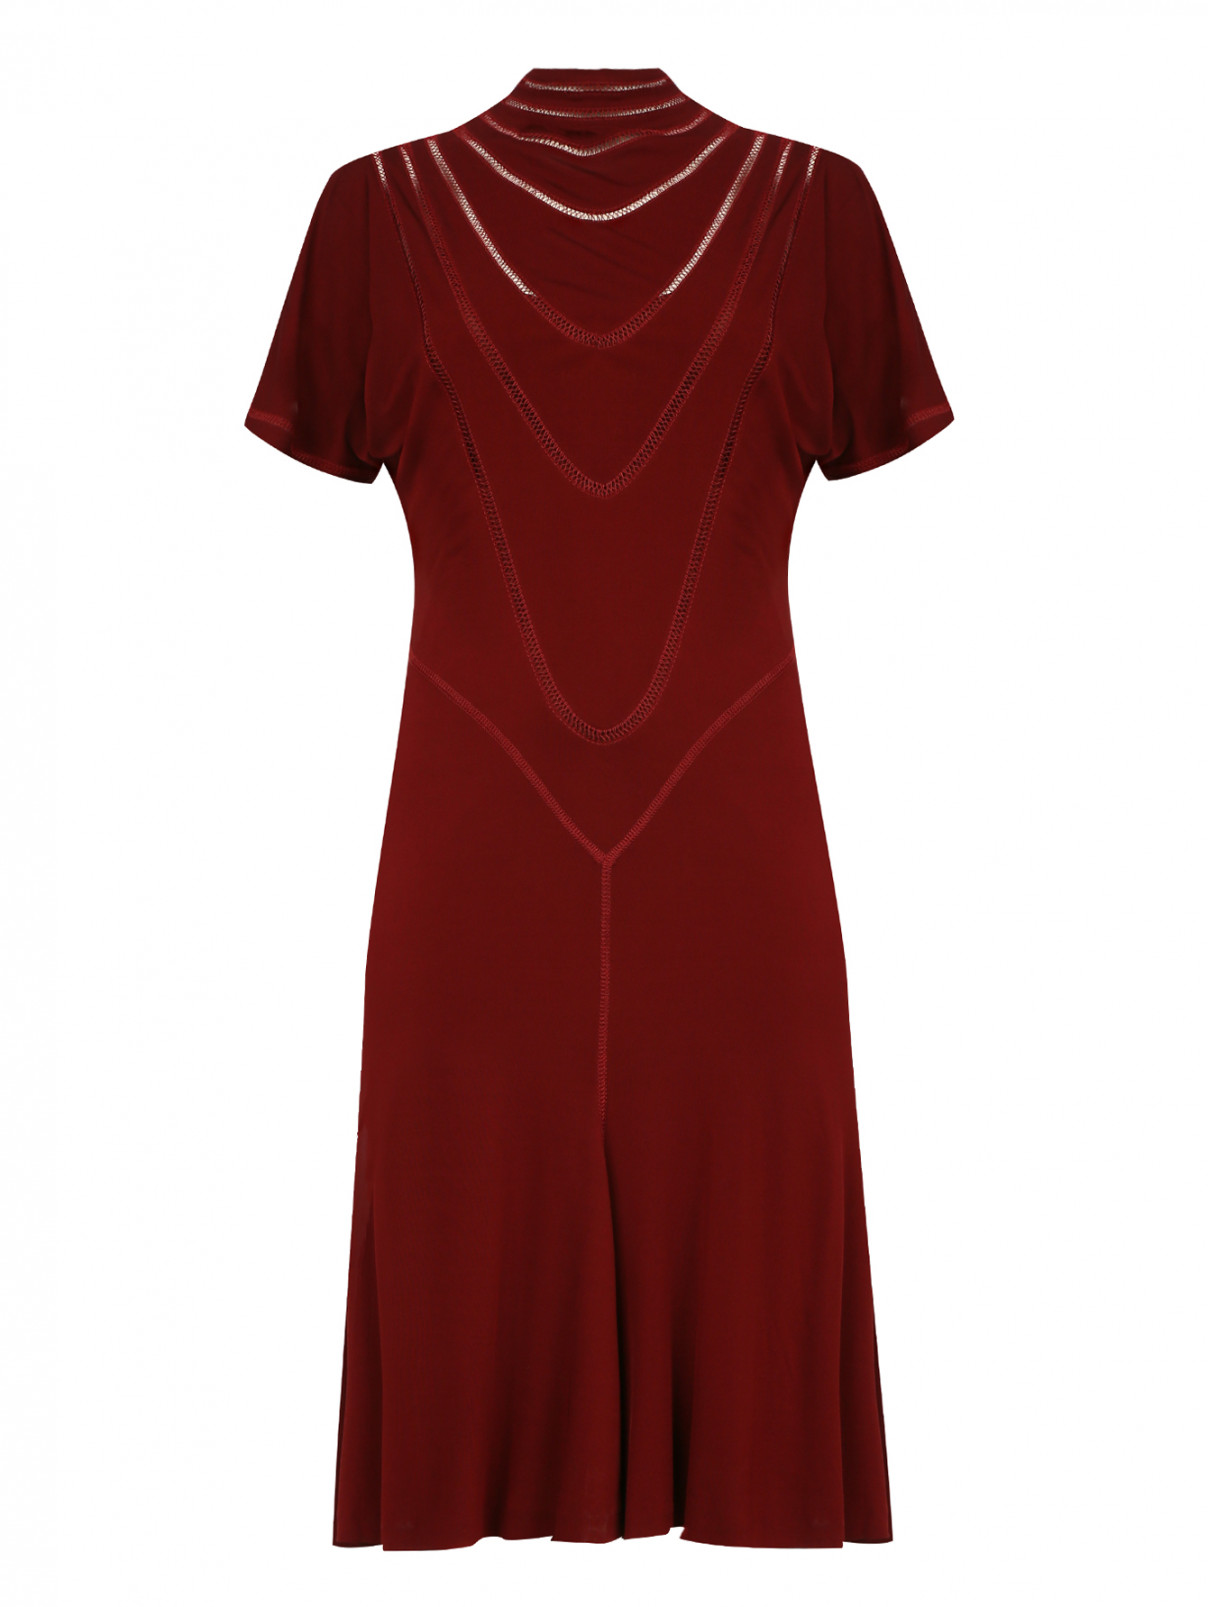 Трикотажное платье декорированное вышивкой Jean Paul Gaultier  –  Общий вид  – Цвет:  Черный